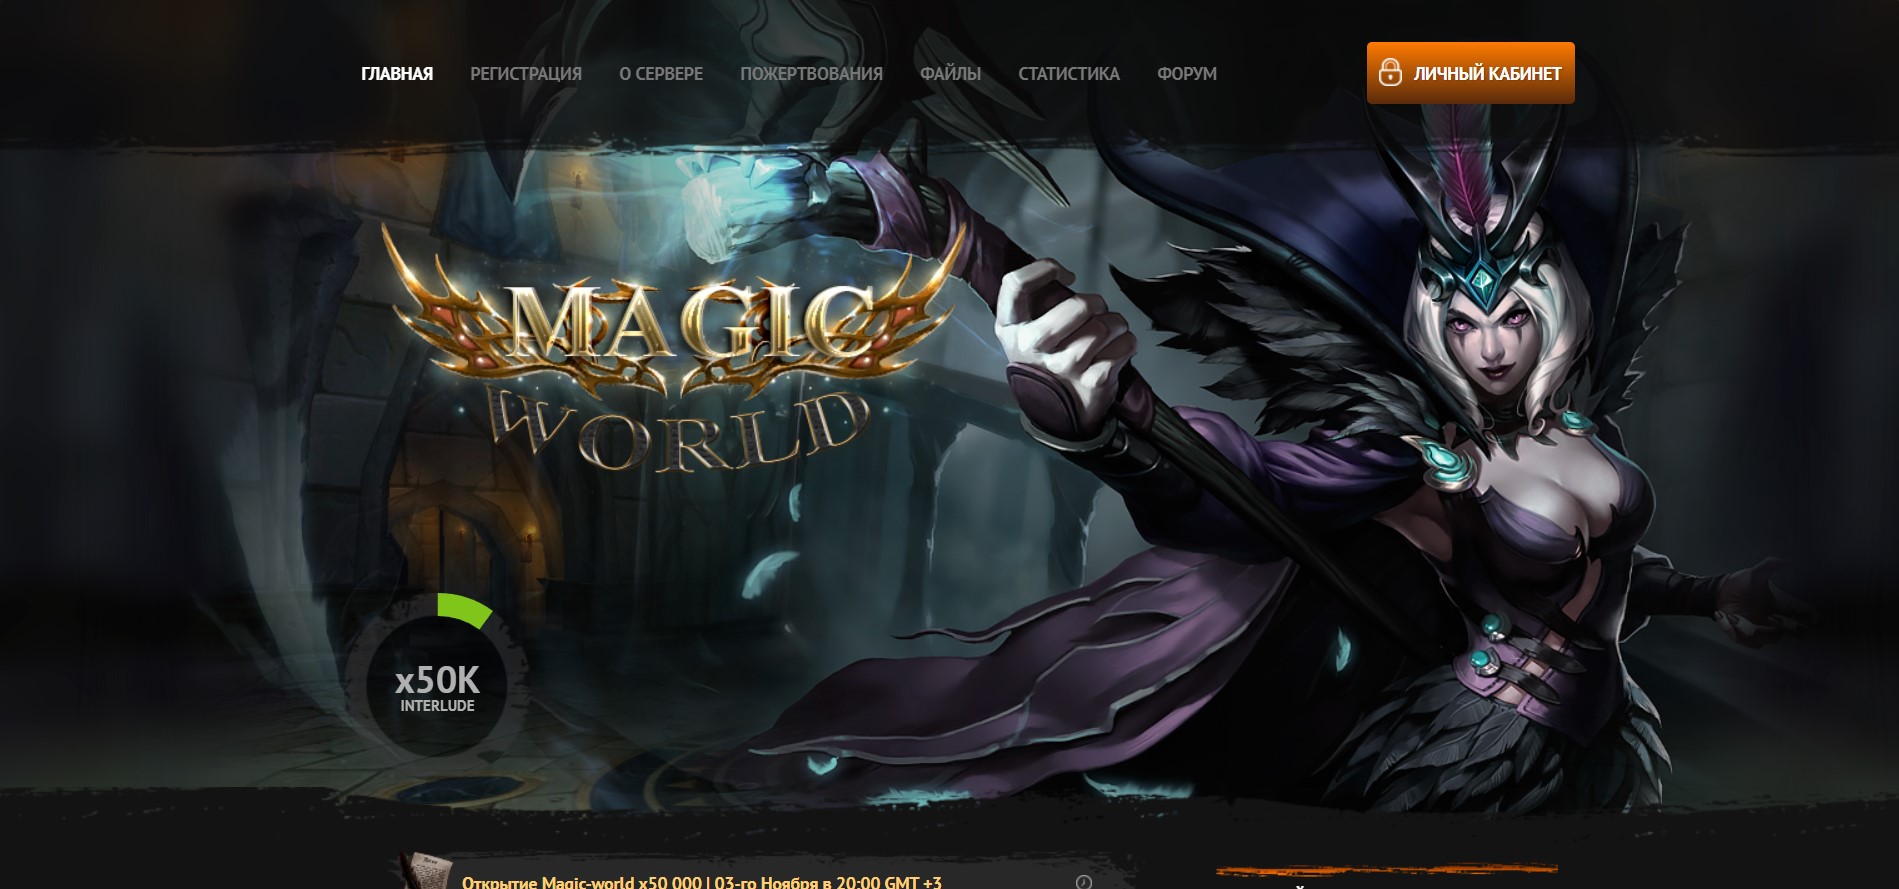 ✨ Magic-World.fun - Казковий світ Interlude з рейтами x50,000! Стань частиною чарівності!